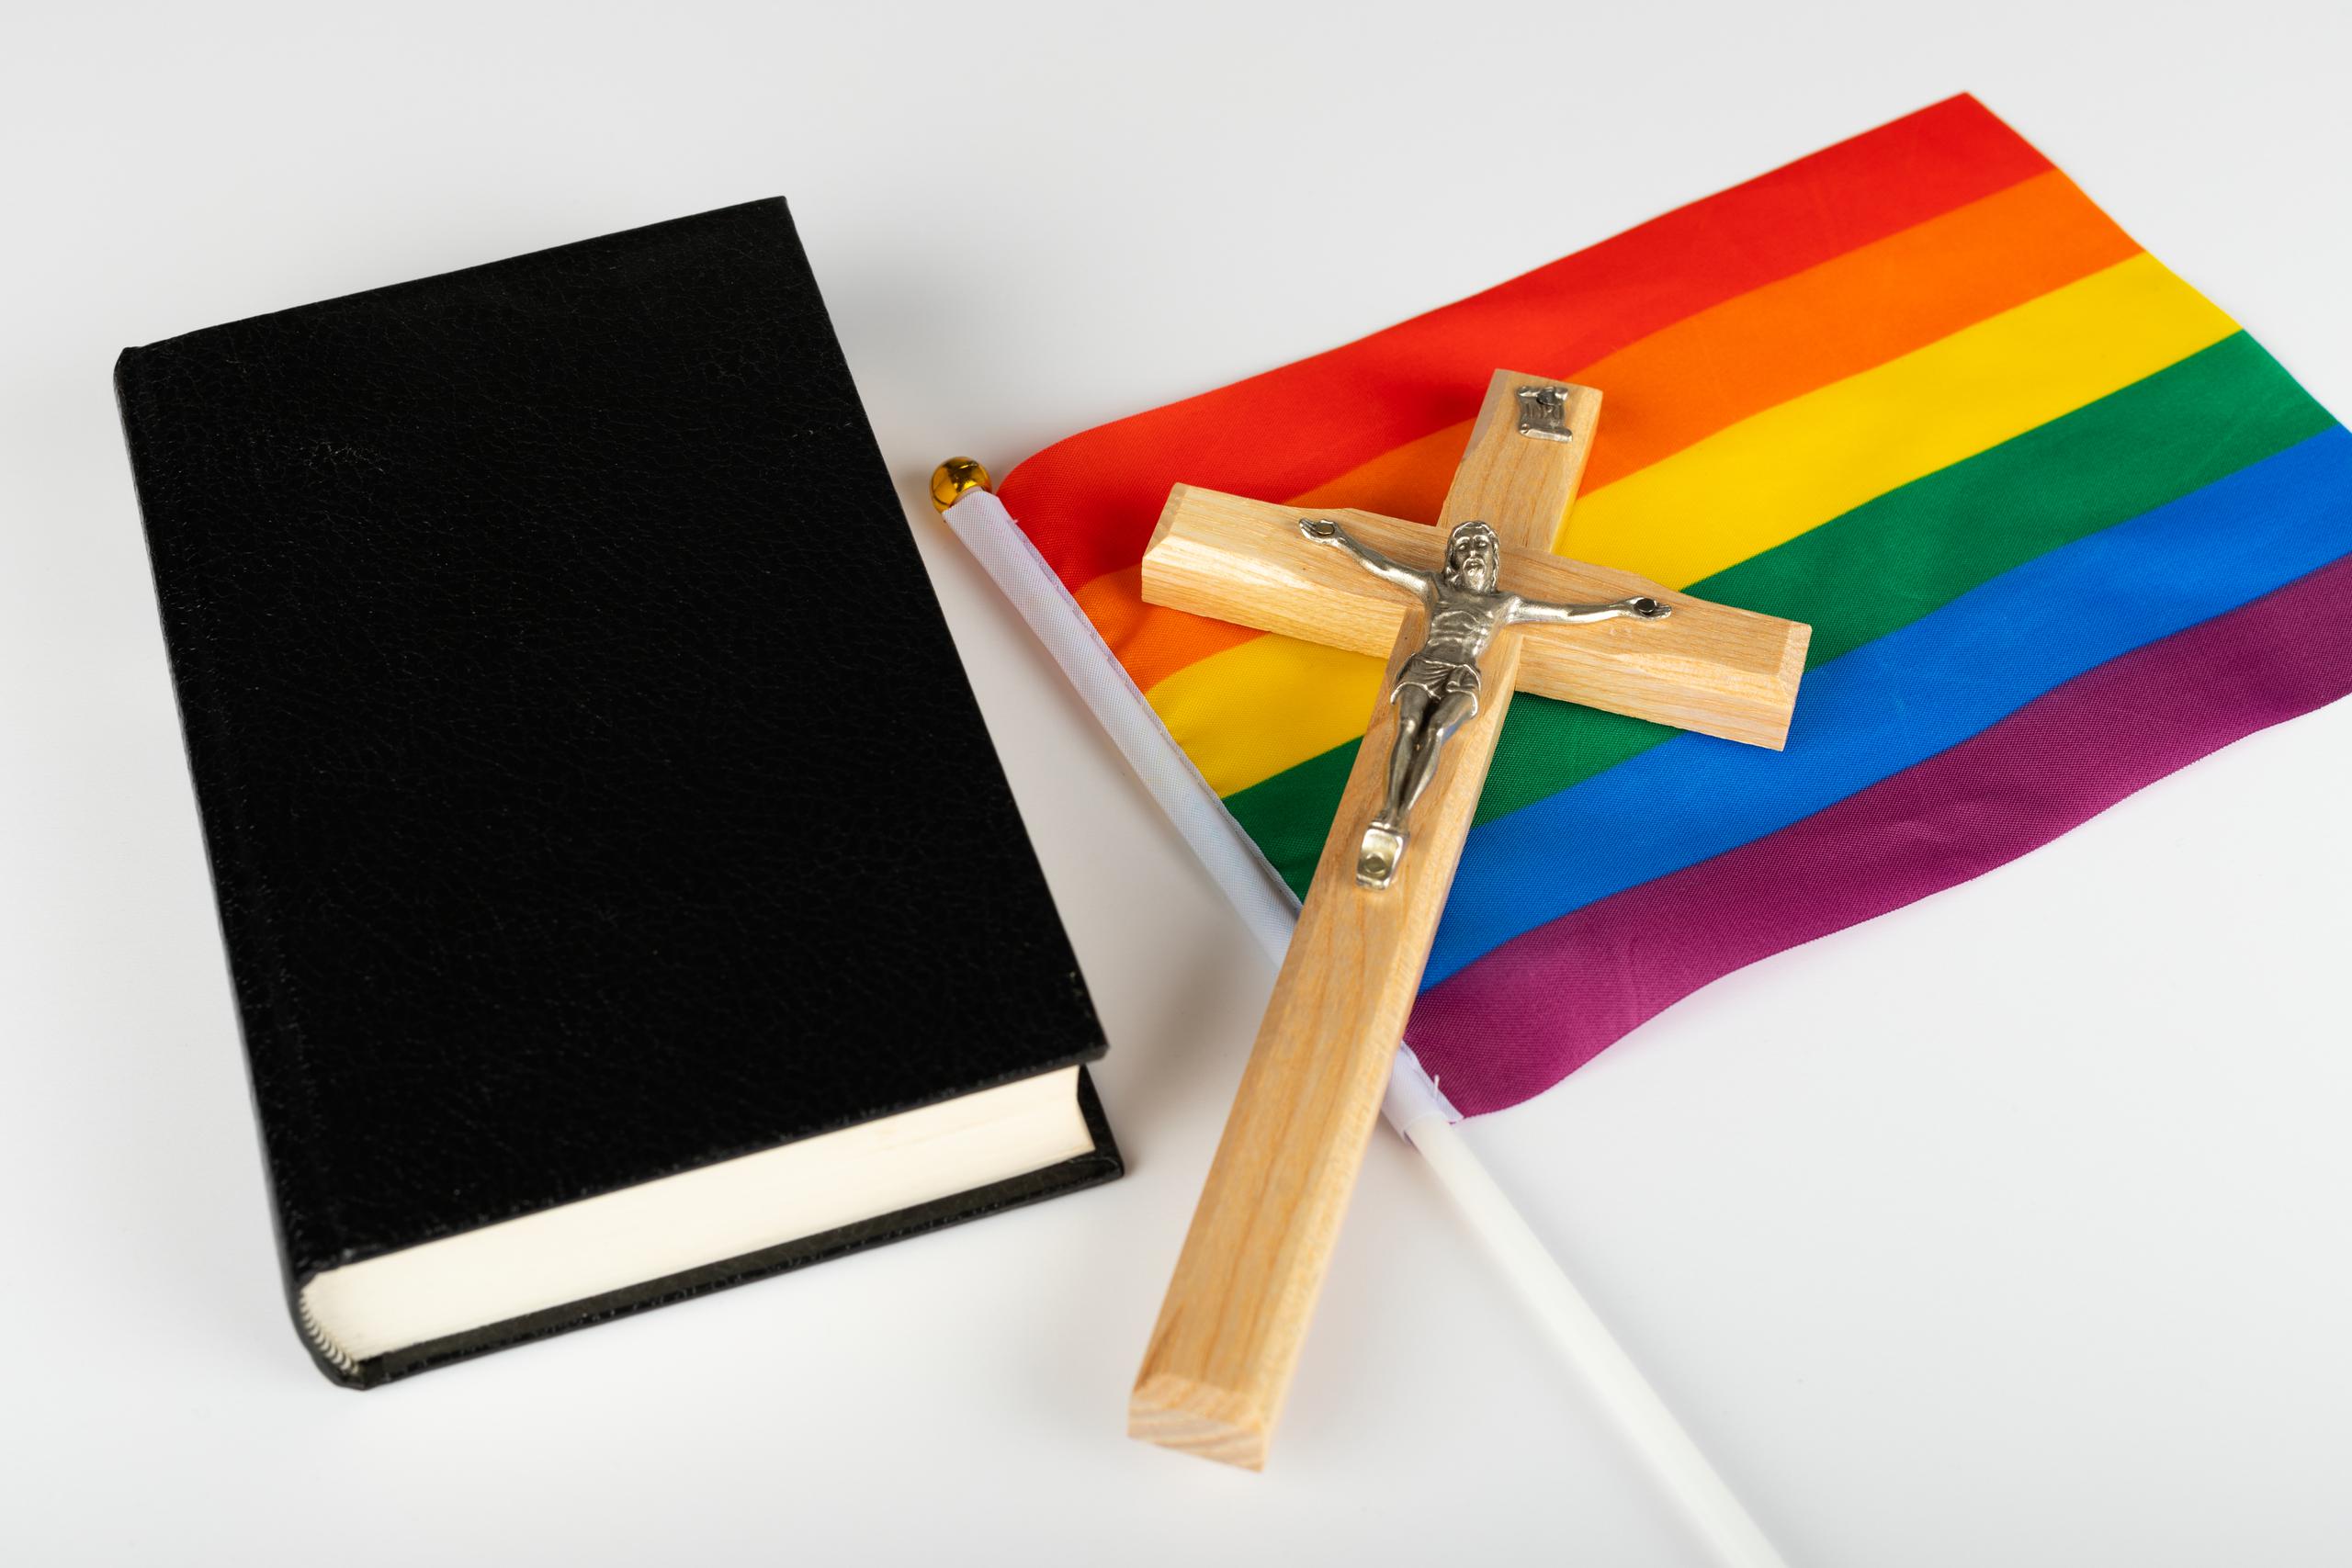 Entre los datos más relevantes de la encuesta se destaca que 47% de la muestra respondió estar “totalmente de acuerdo” con la premisa de que la iglesia debe aceptar a los homosexuales para que participen de sus ritos.